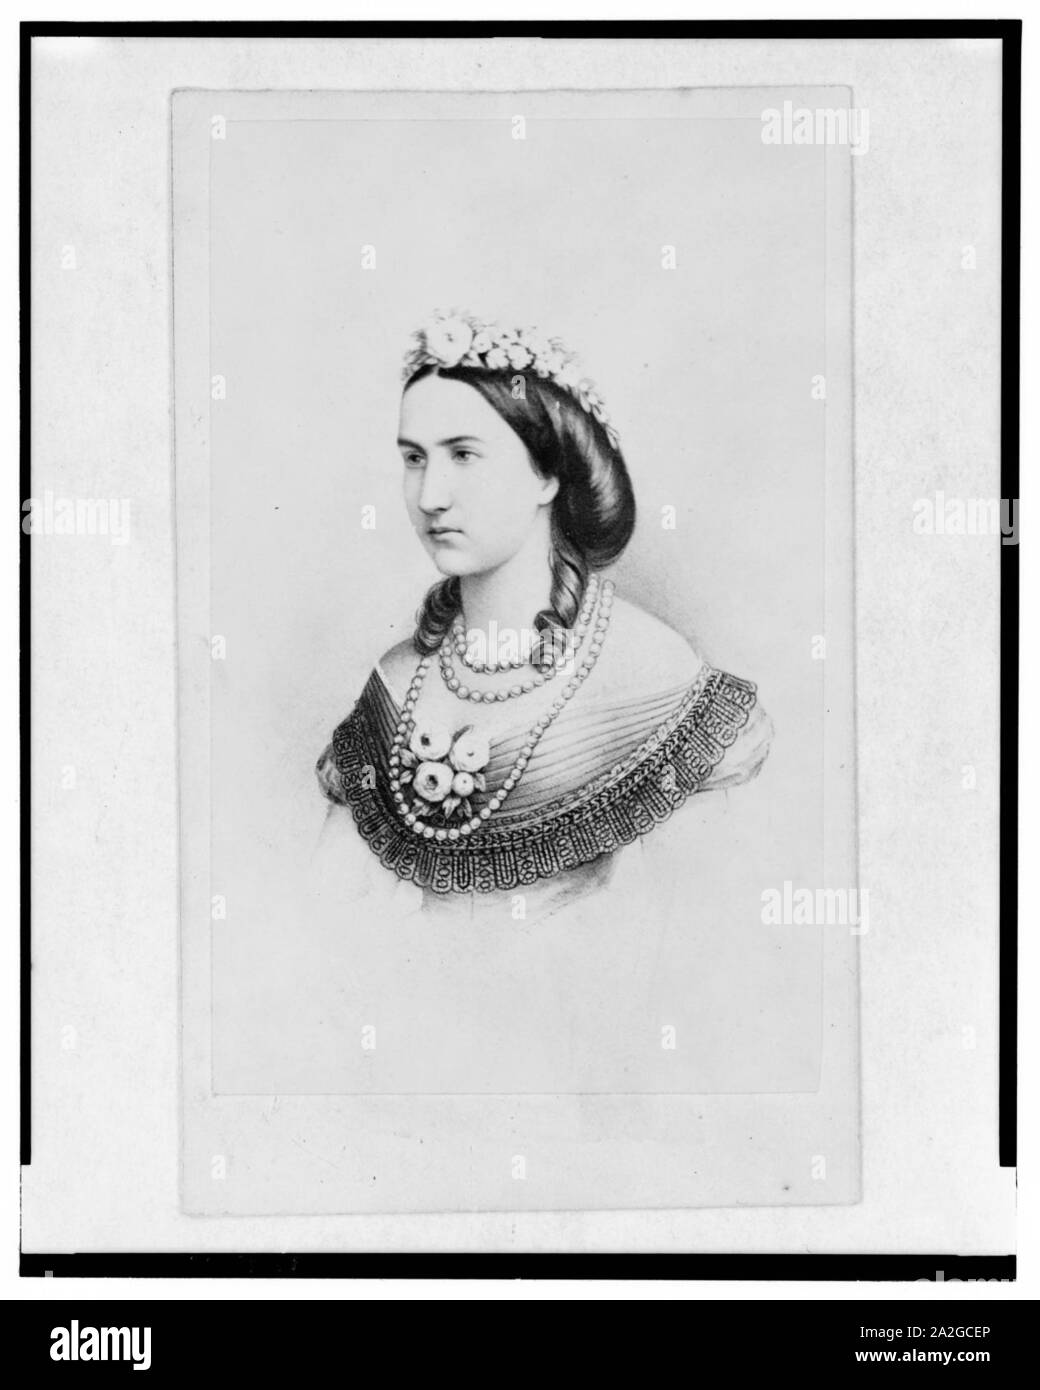 Imperatrice Carlotta del Messico, testa e spalle ritratto, rivolto verso sinistra Foto Stock